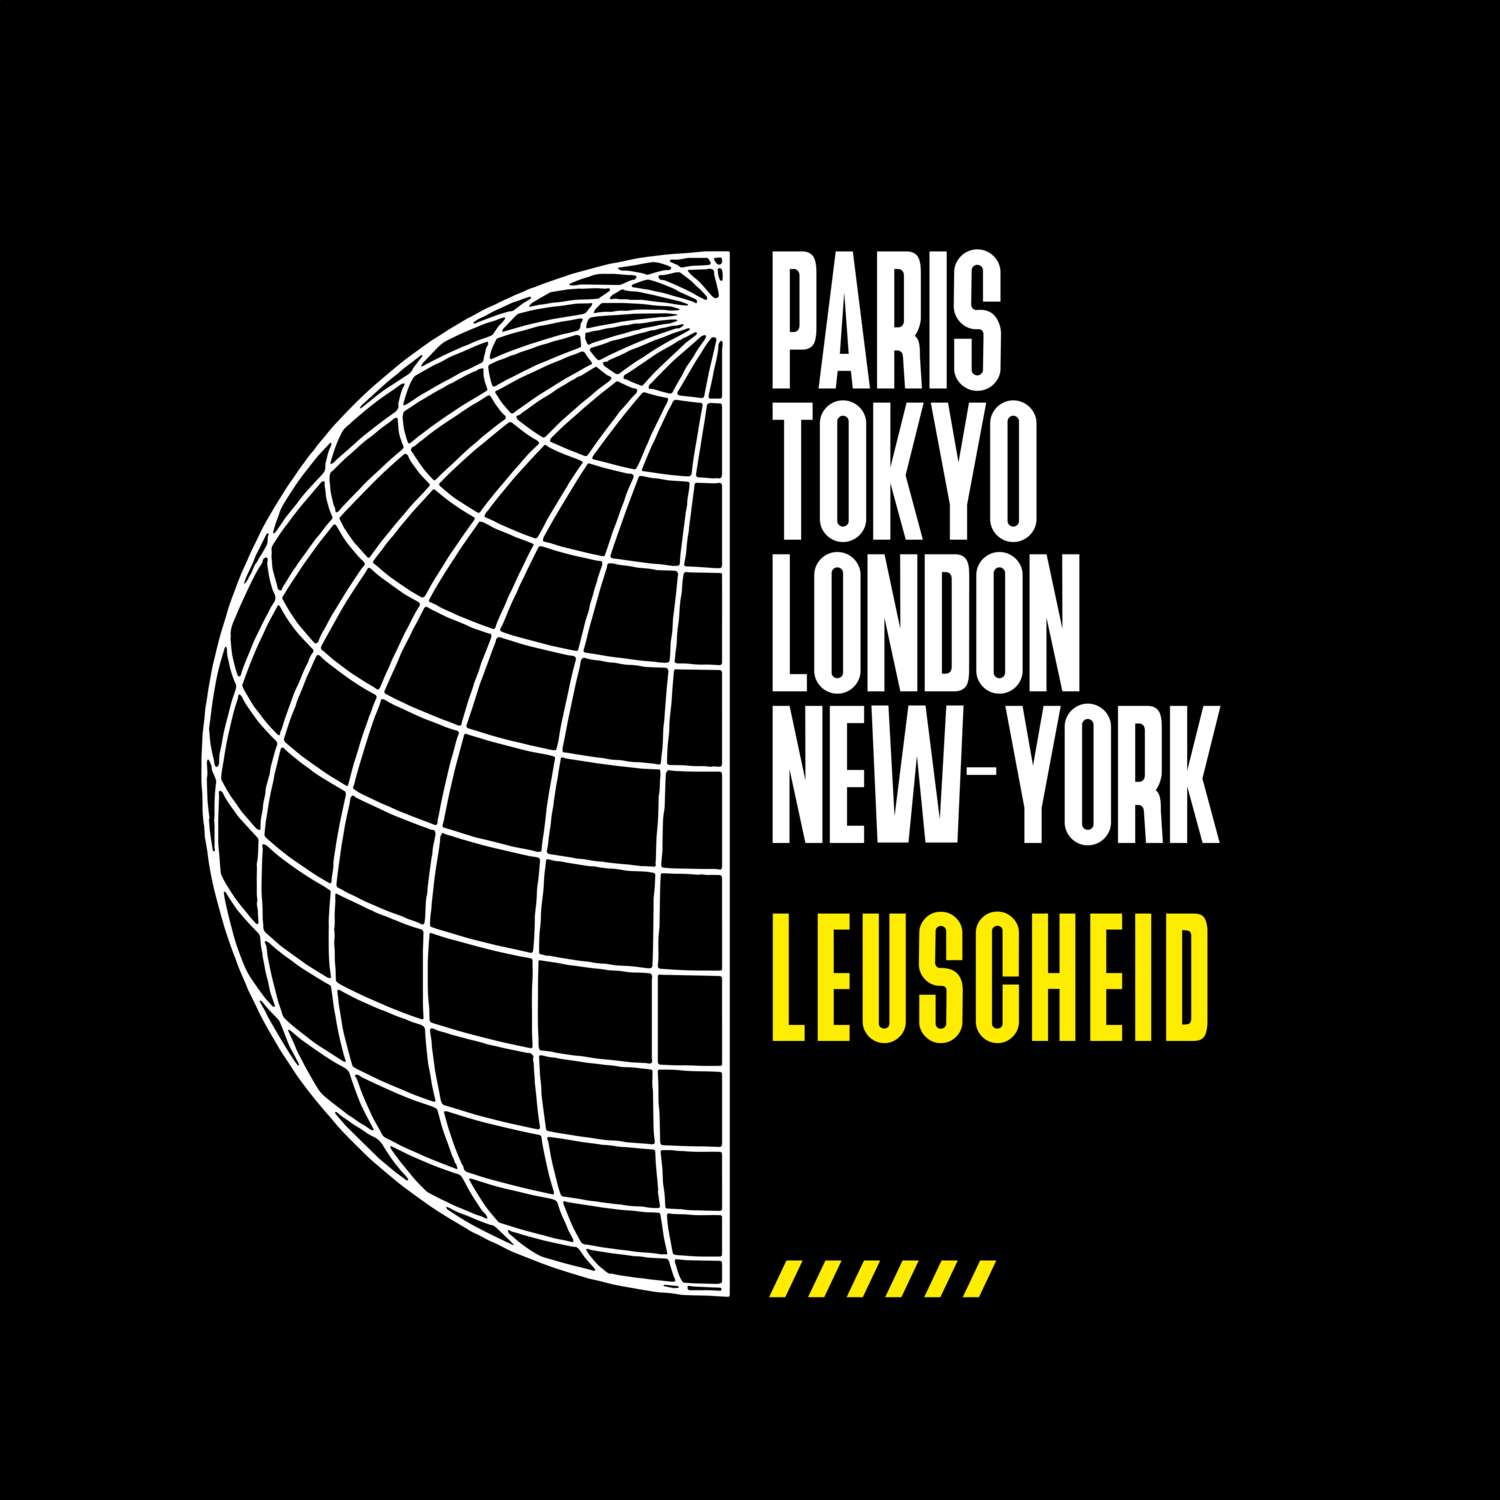 Leuscheid T-Shirt »Paris Tokyo London«